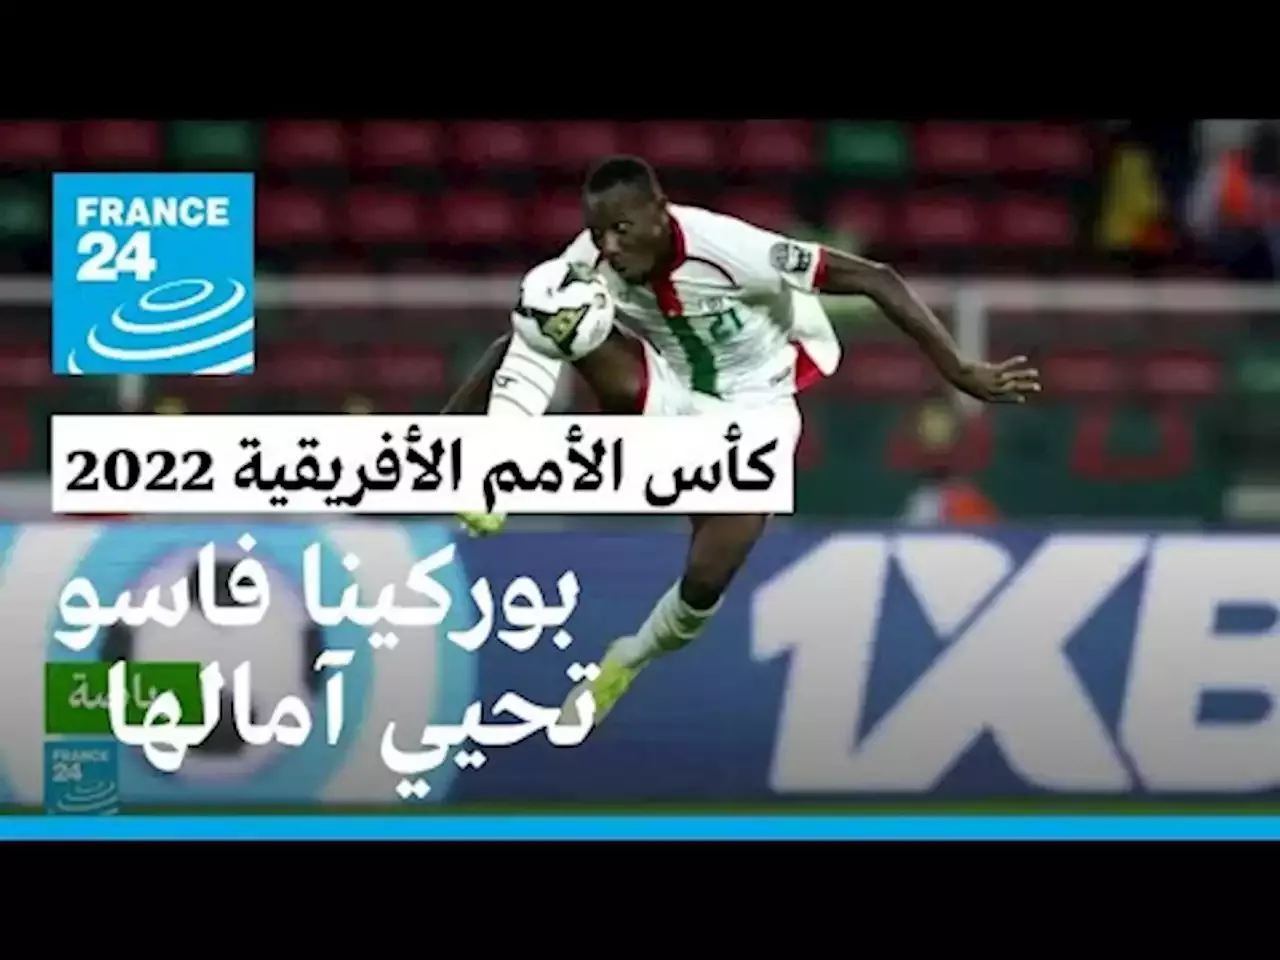 كأس الأمم الأفريقية 2022: بوركينا فاسو تحقق فوزا صعبا على الرأس الأخضر